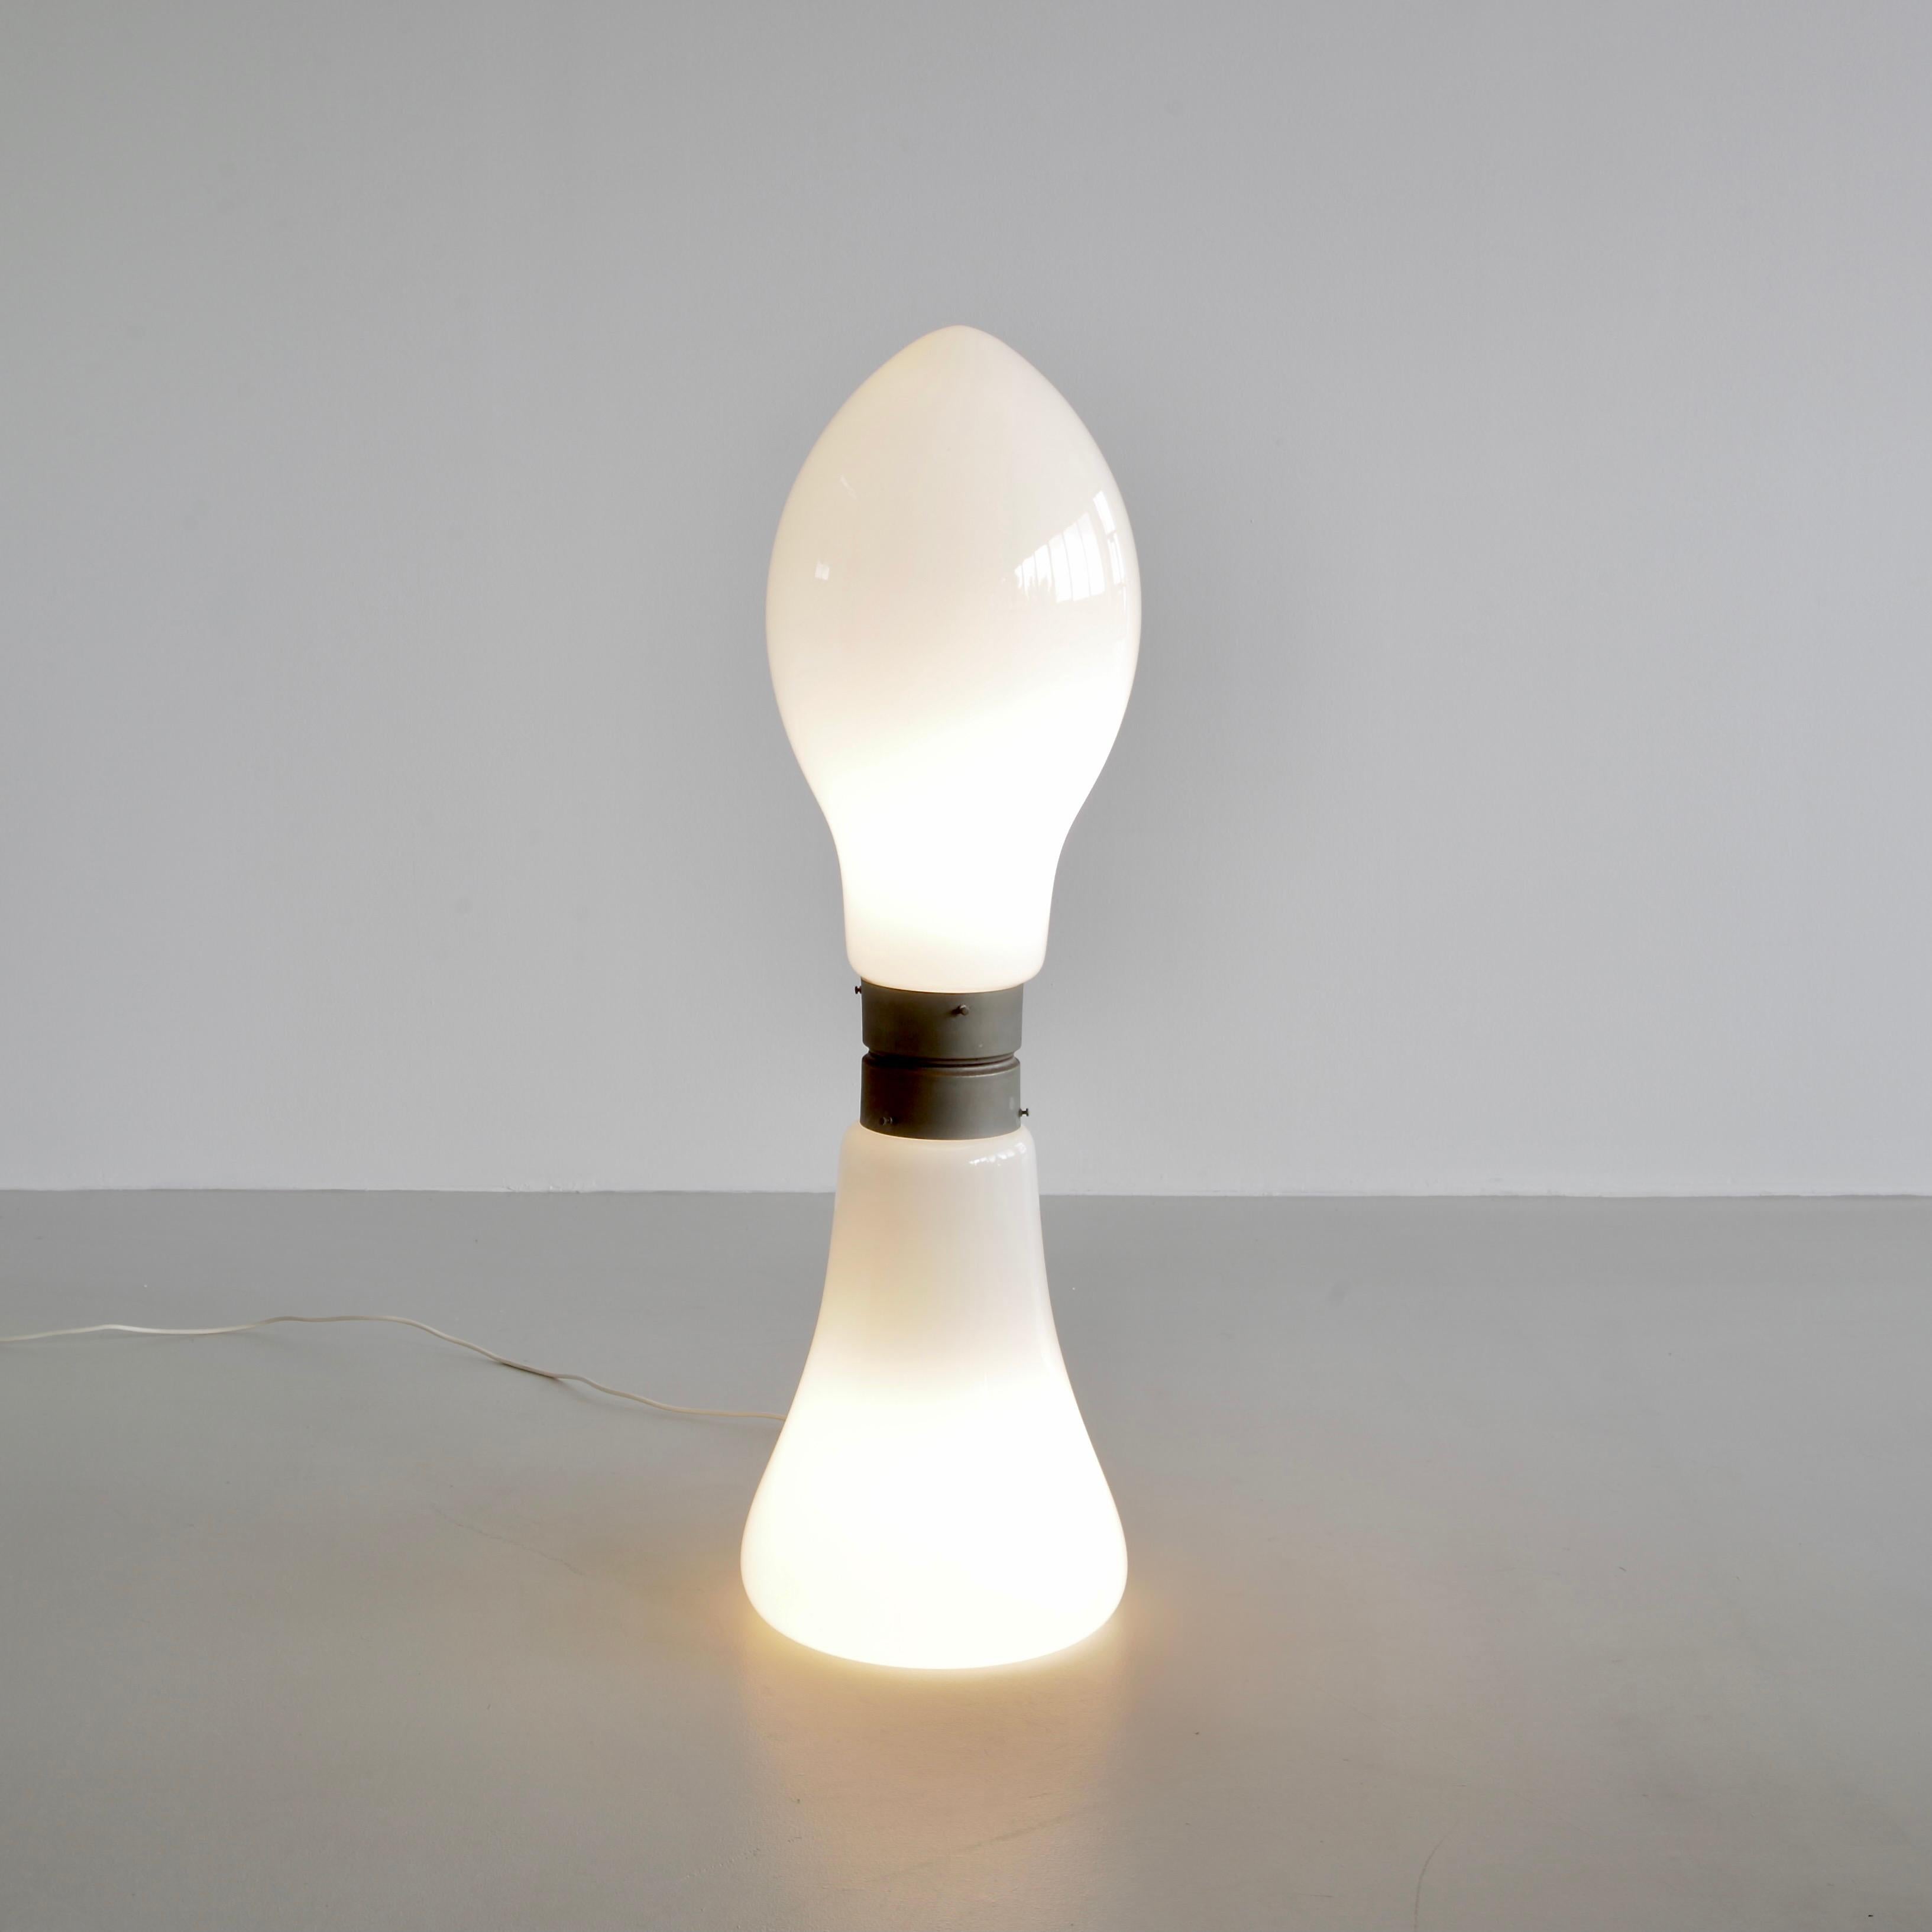 Organic Modern Floor Lamp by AV Mazzega, Italy, c1970